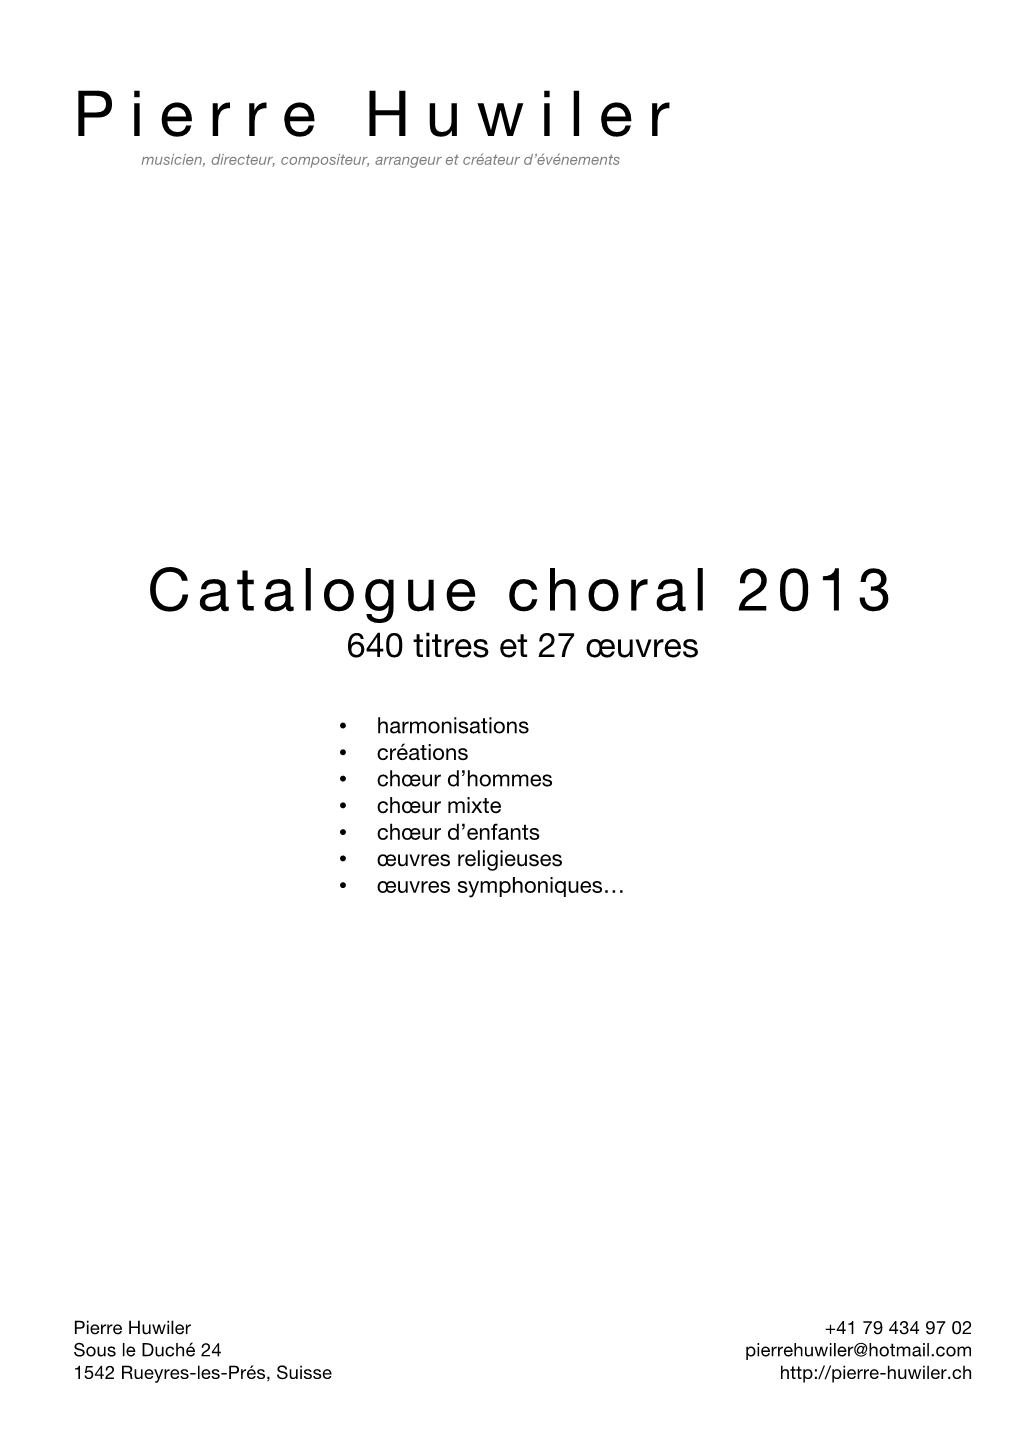 Catalogue Choral 2013 De Pierre Huwiler